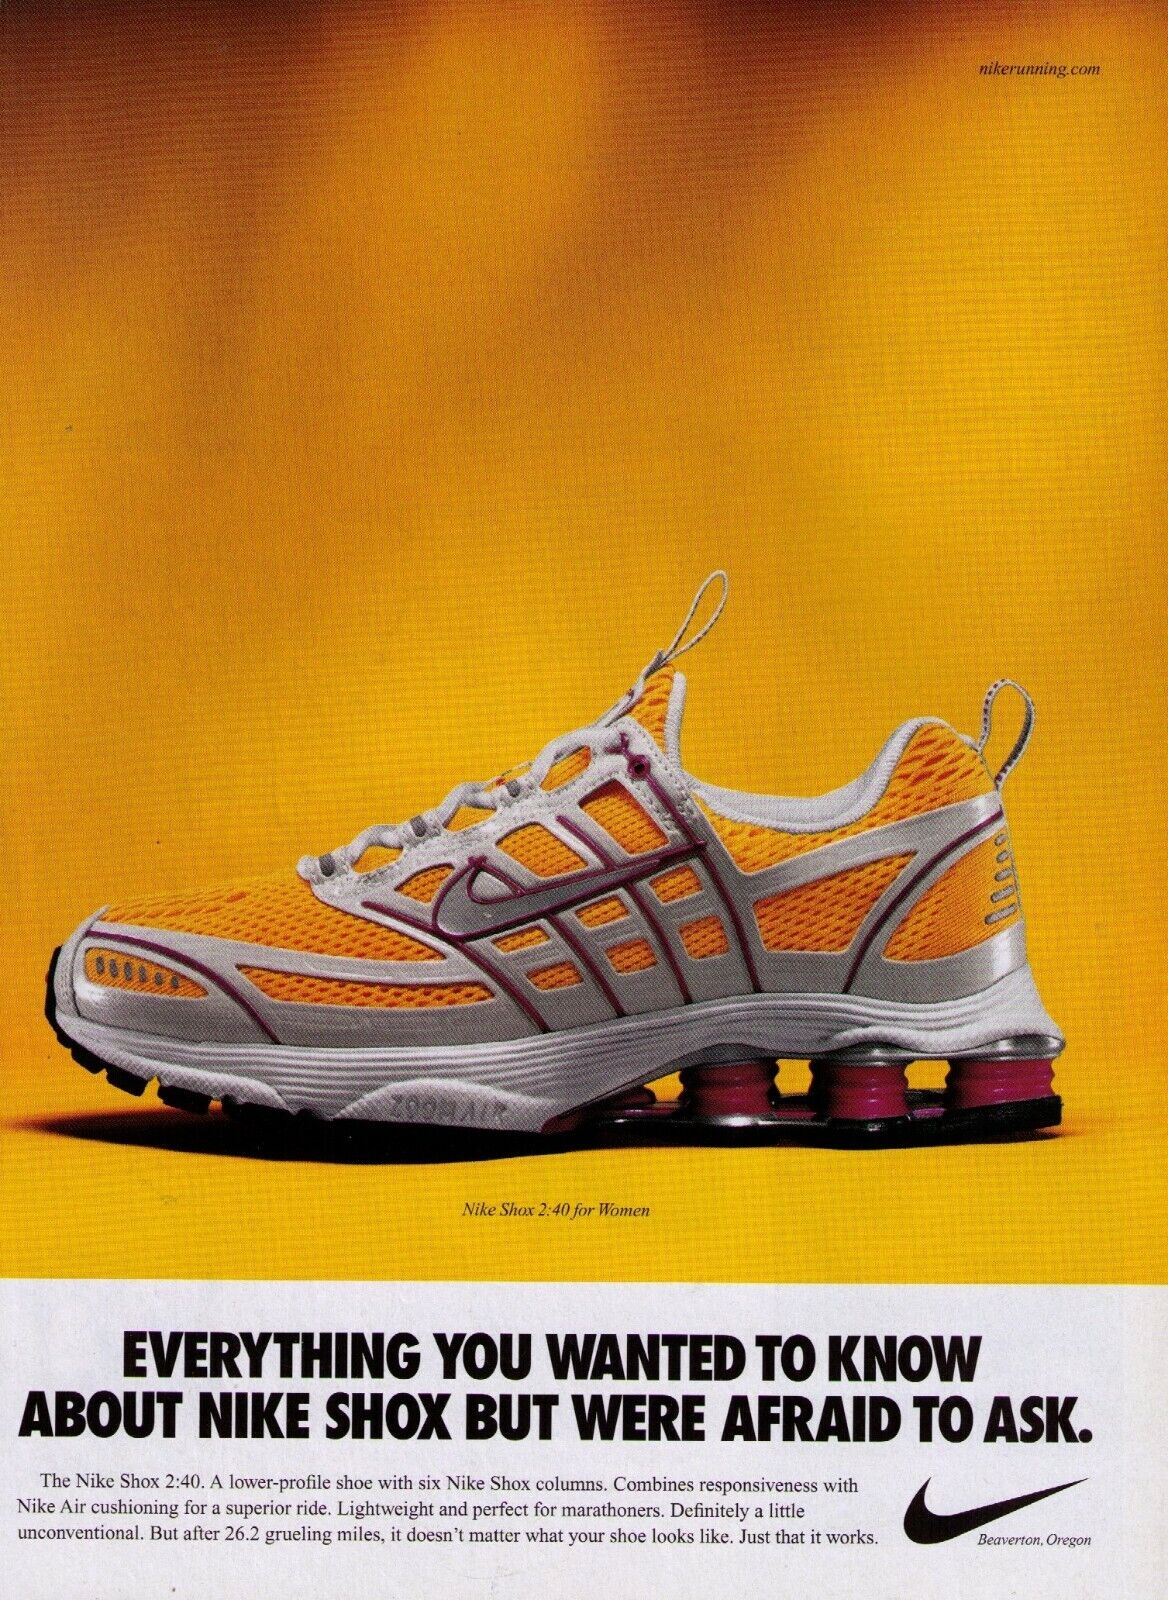 2005 Nike Shox 2:40 Women Classic Running Shoe Print Advert.